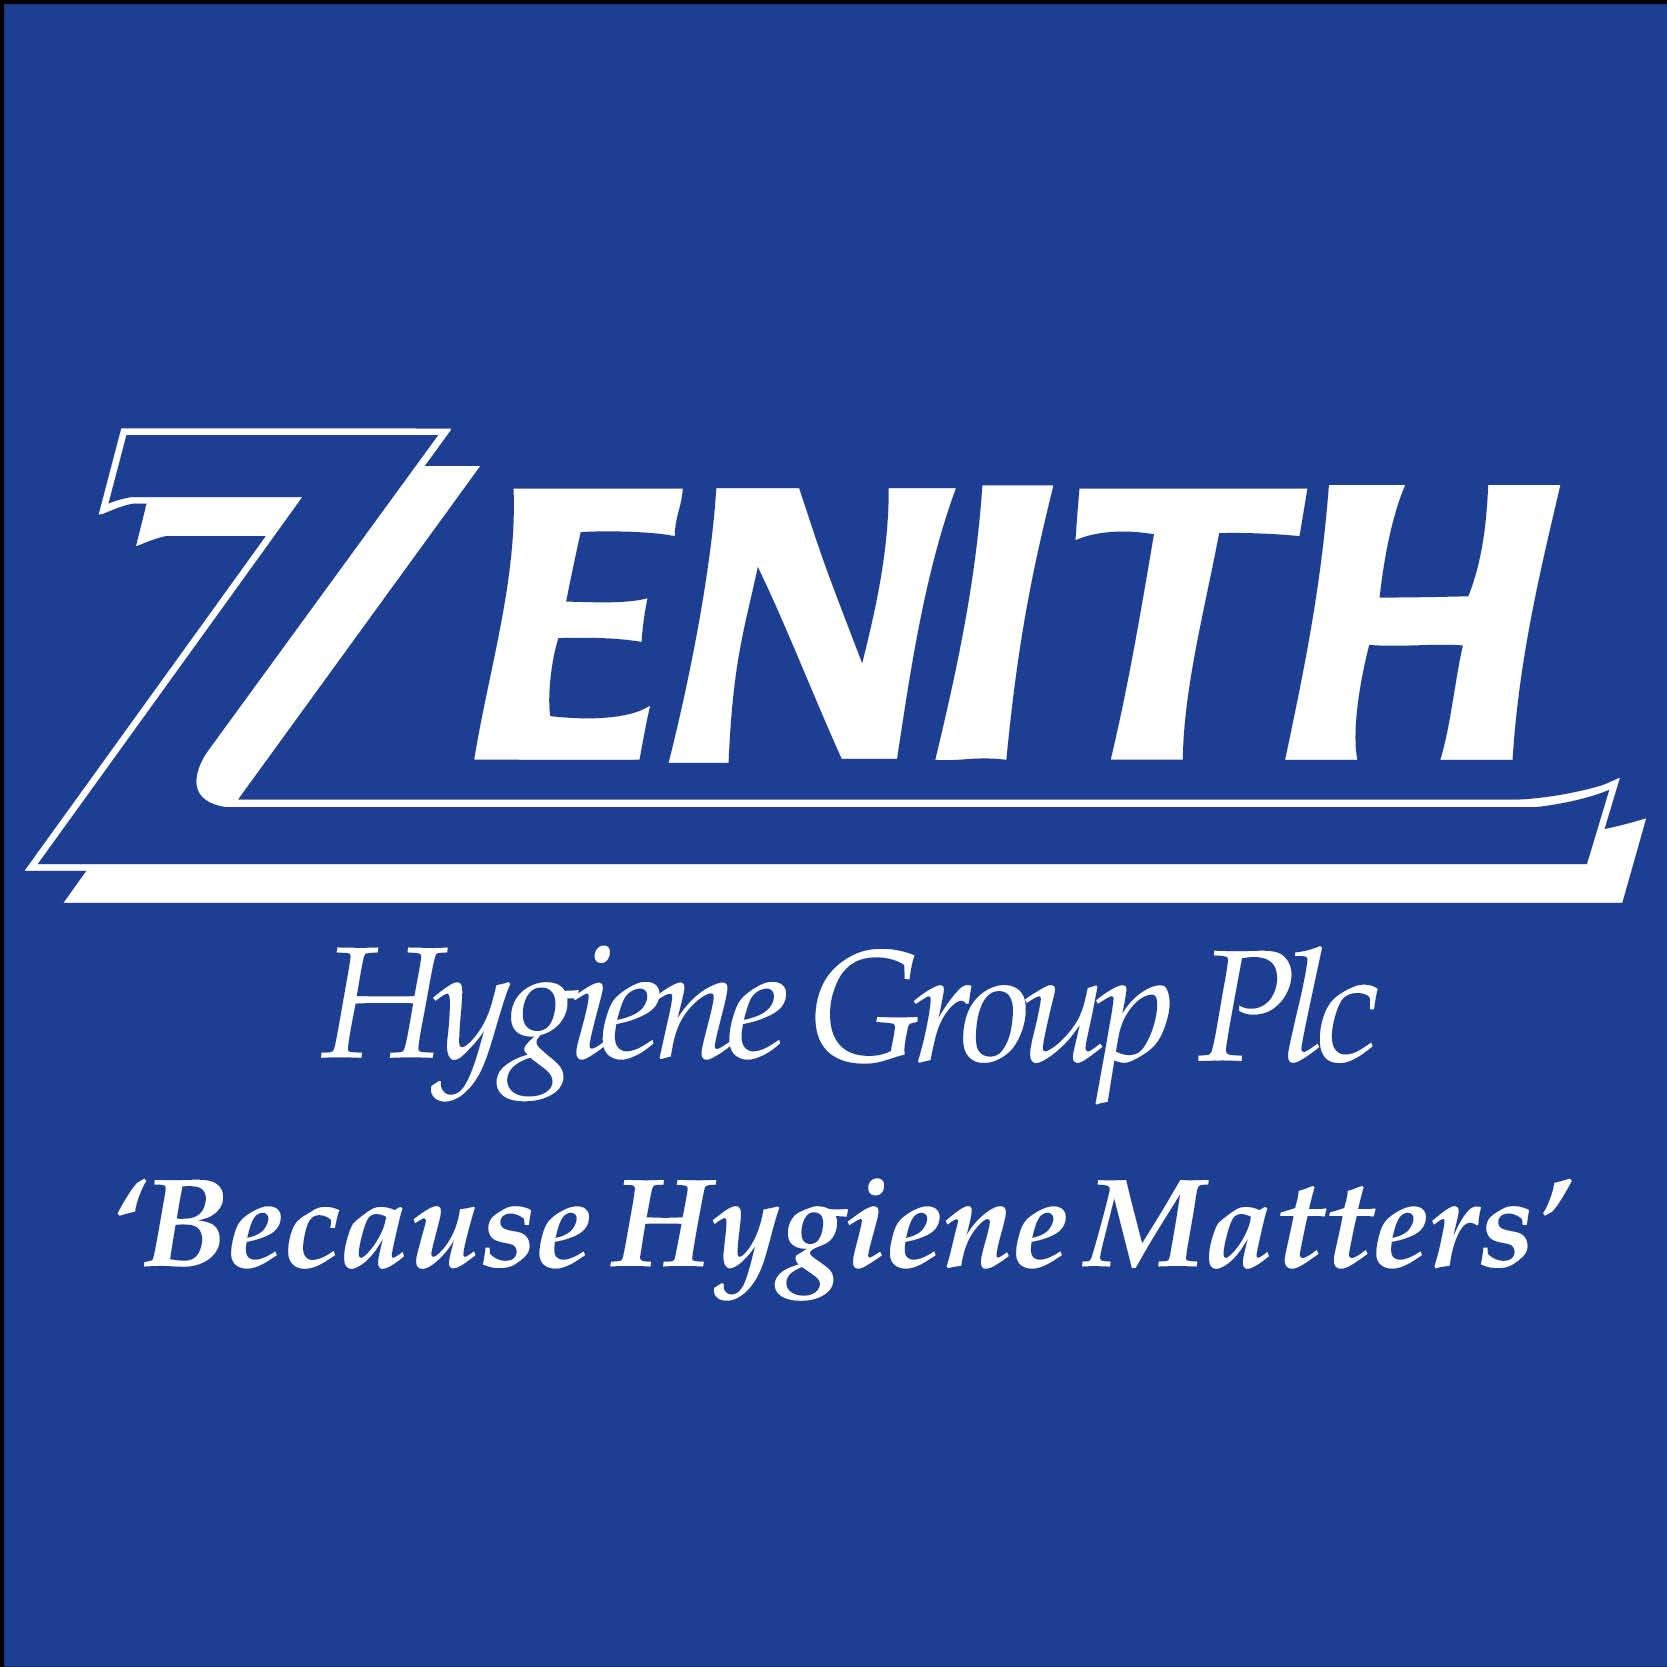 Zenith Hygiene Group